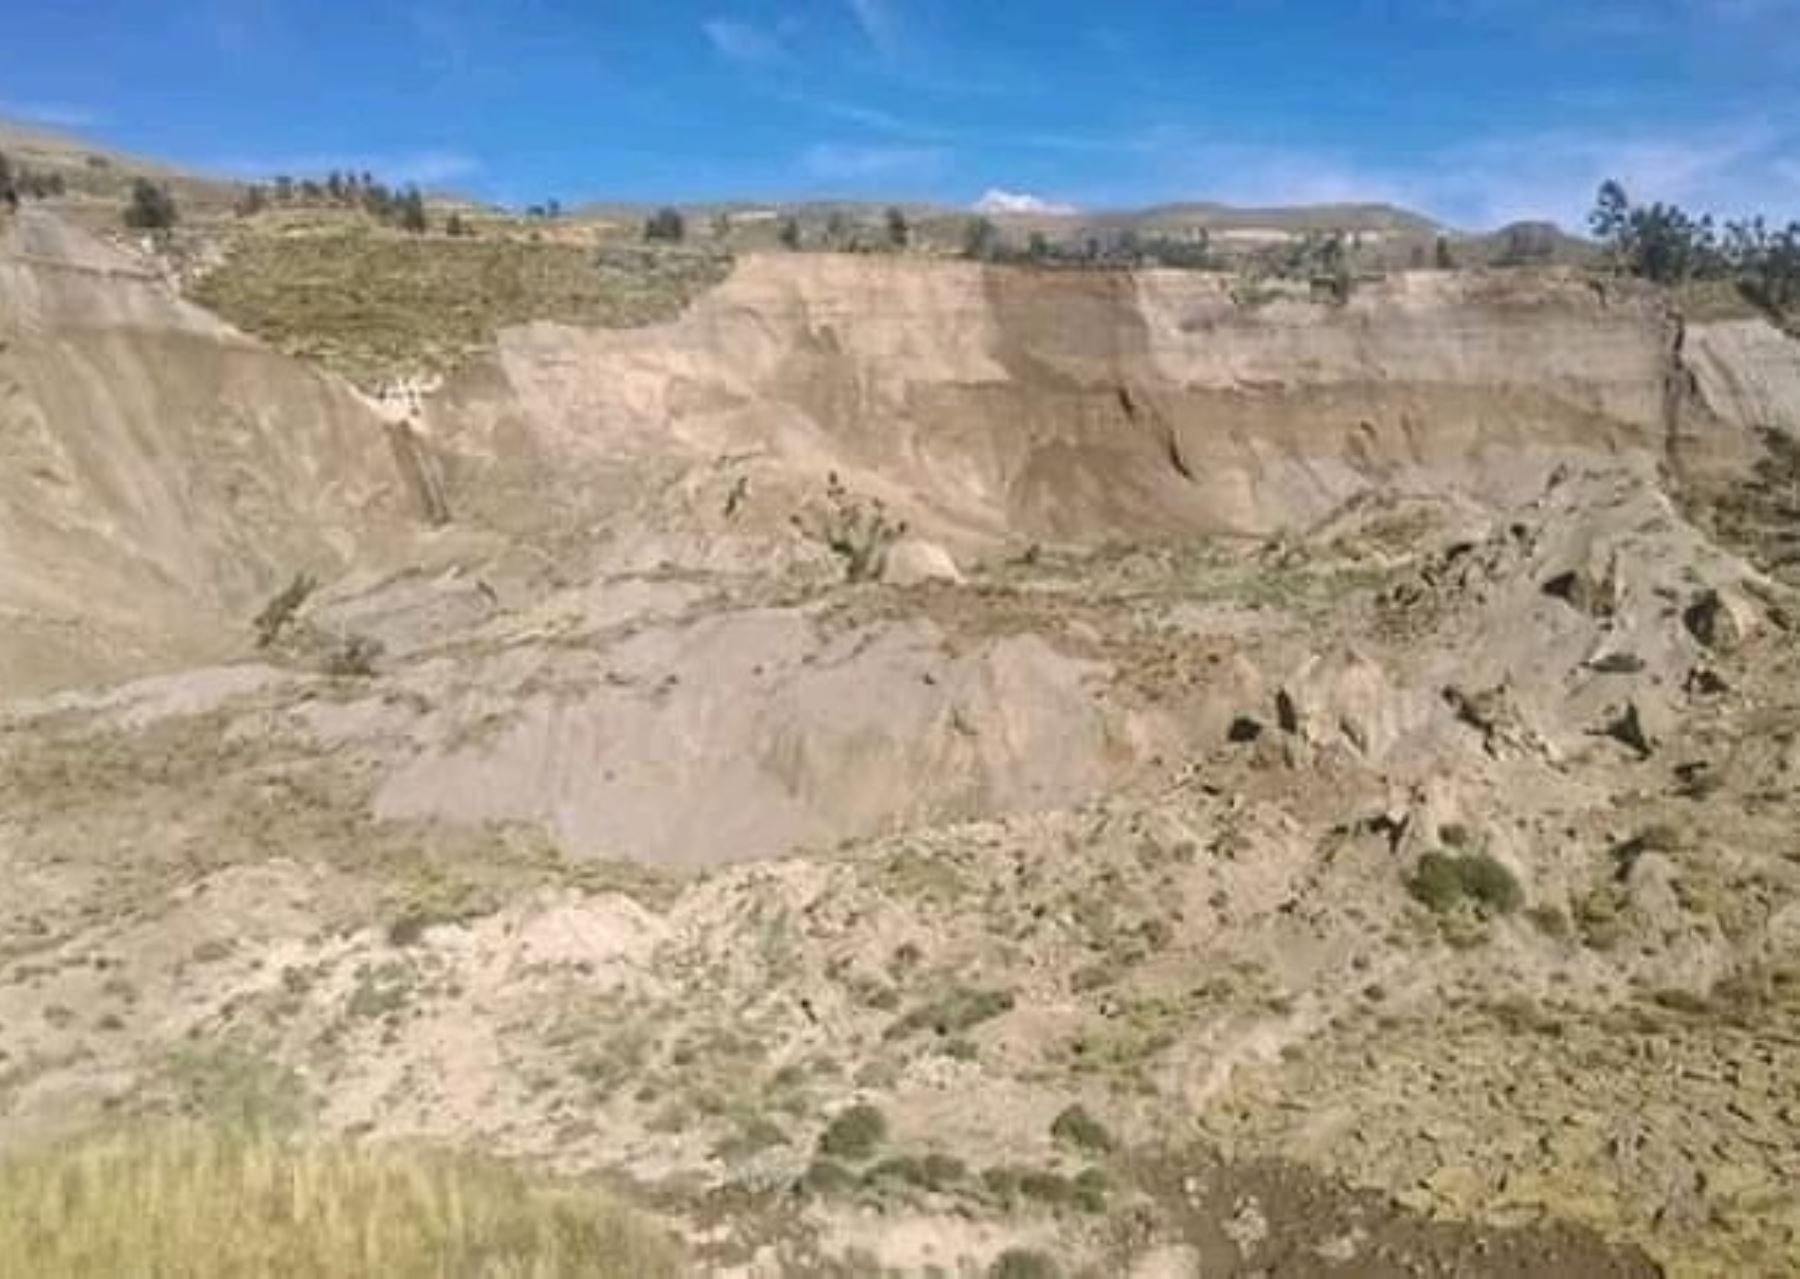 Deslizamiento registrado ayer en el valle del Colca provocó señales sísmicas anómalas en Arequipa que hizo temer a la población de que se trataba de sismos.